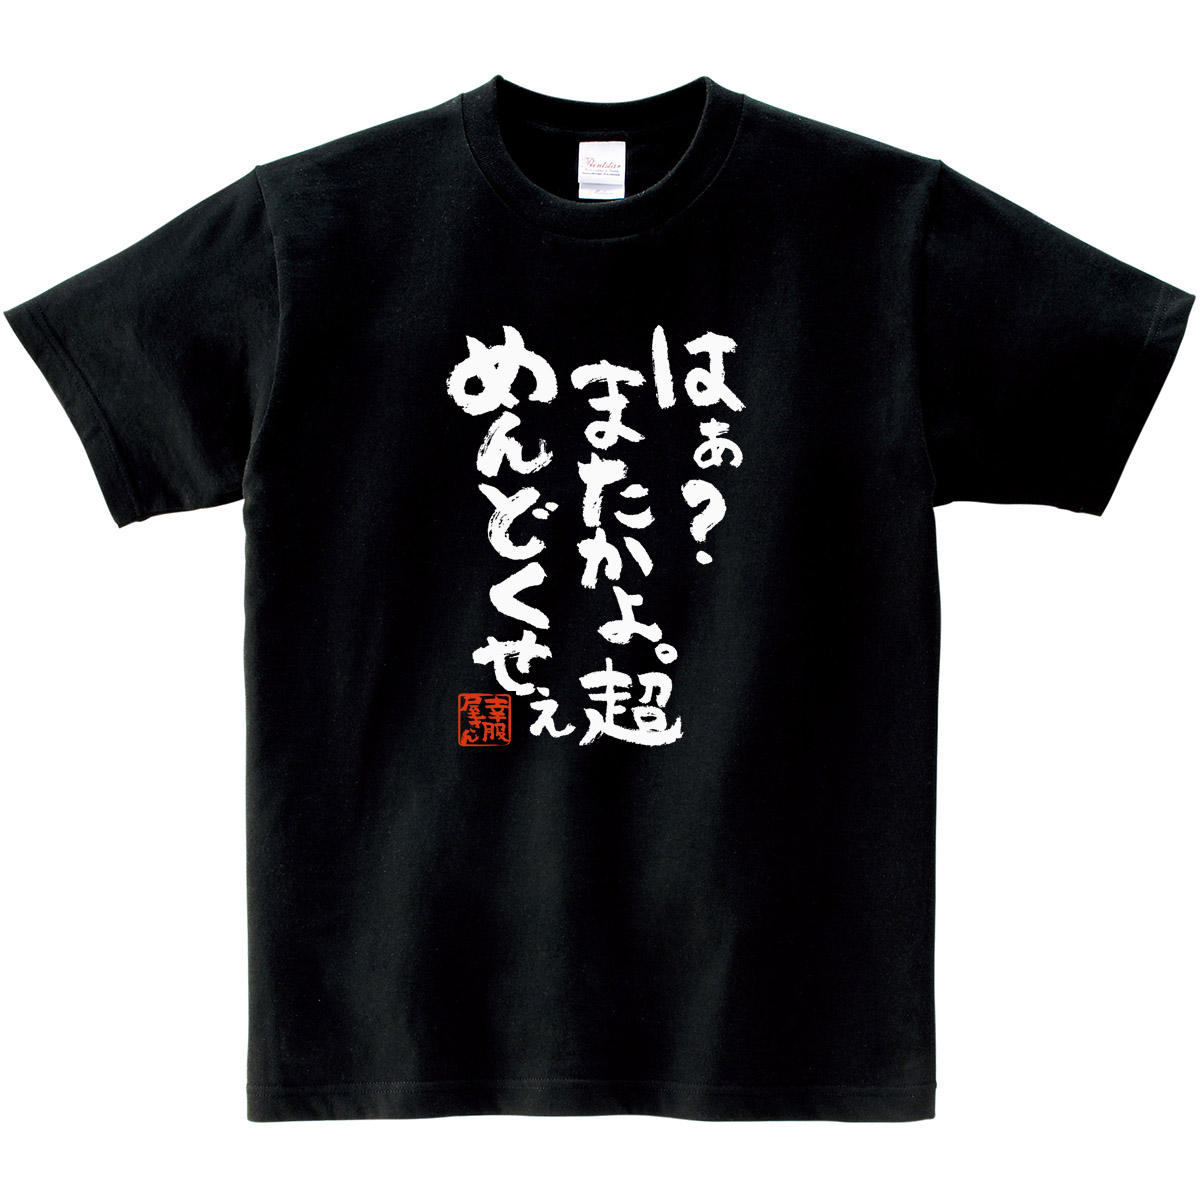 おもしろtシャツ 漢字 文字「はぁ？またかよ。超めんどくせぇ」メッセージTシャツ ティーシャツ ギフト プレゼント ka300-17  KOUFUKUYAブランド 送料込 送料無料 | おもしろTシャツ プレゼント幸服屋